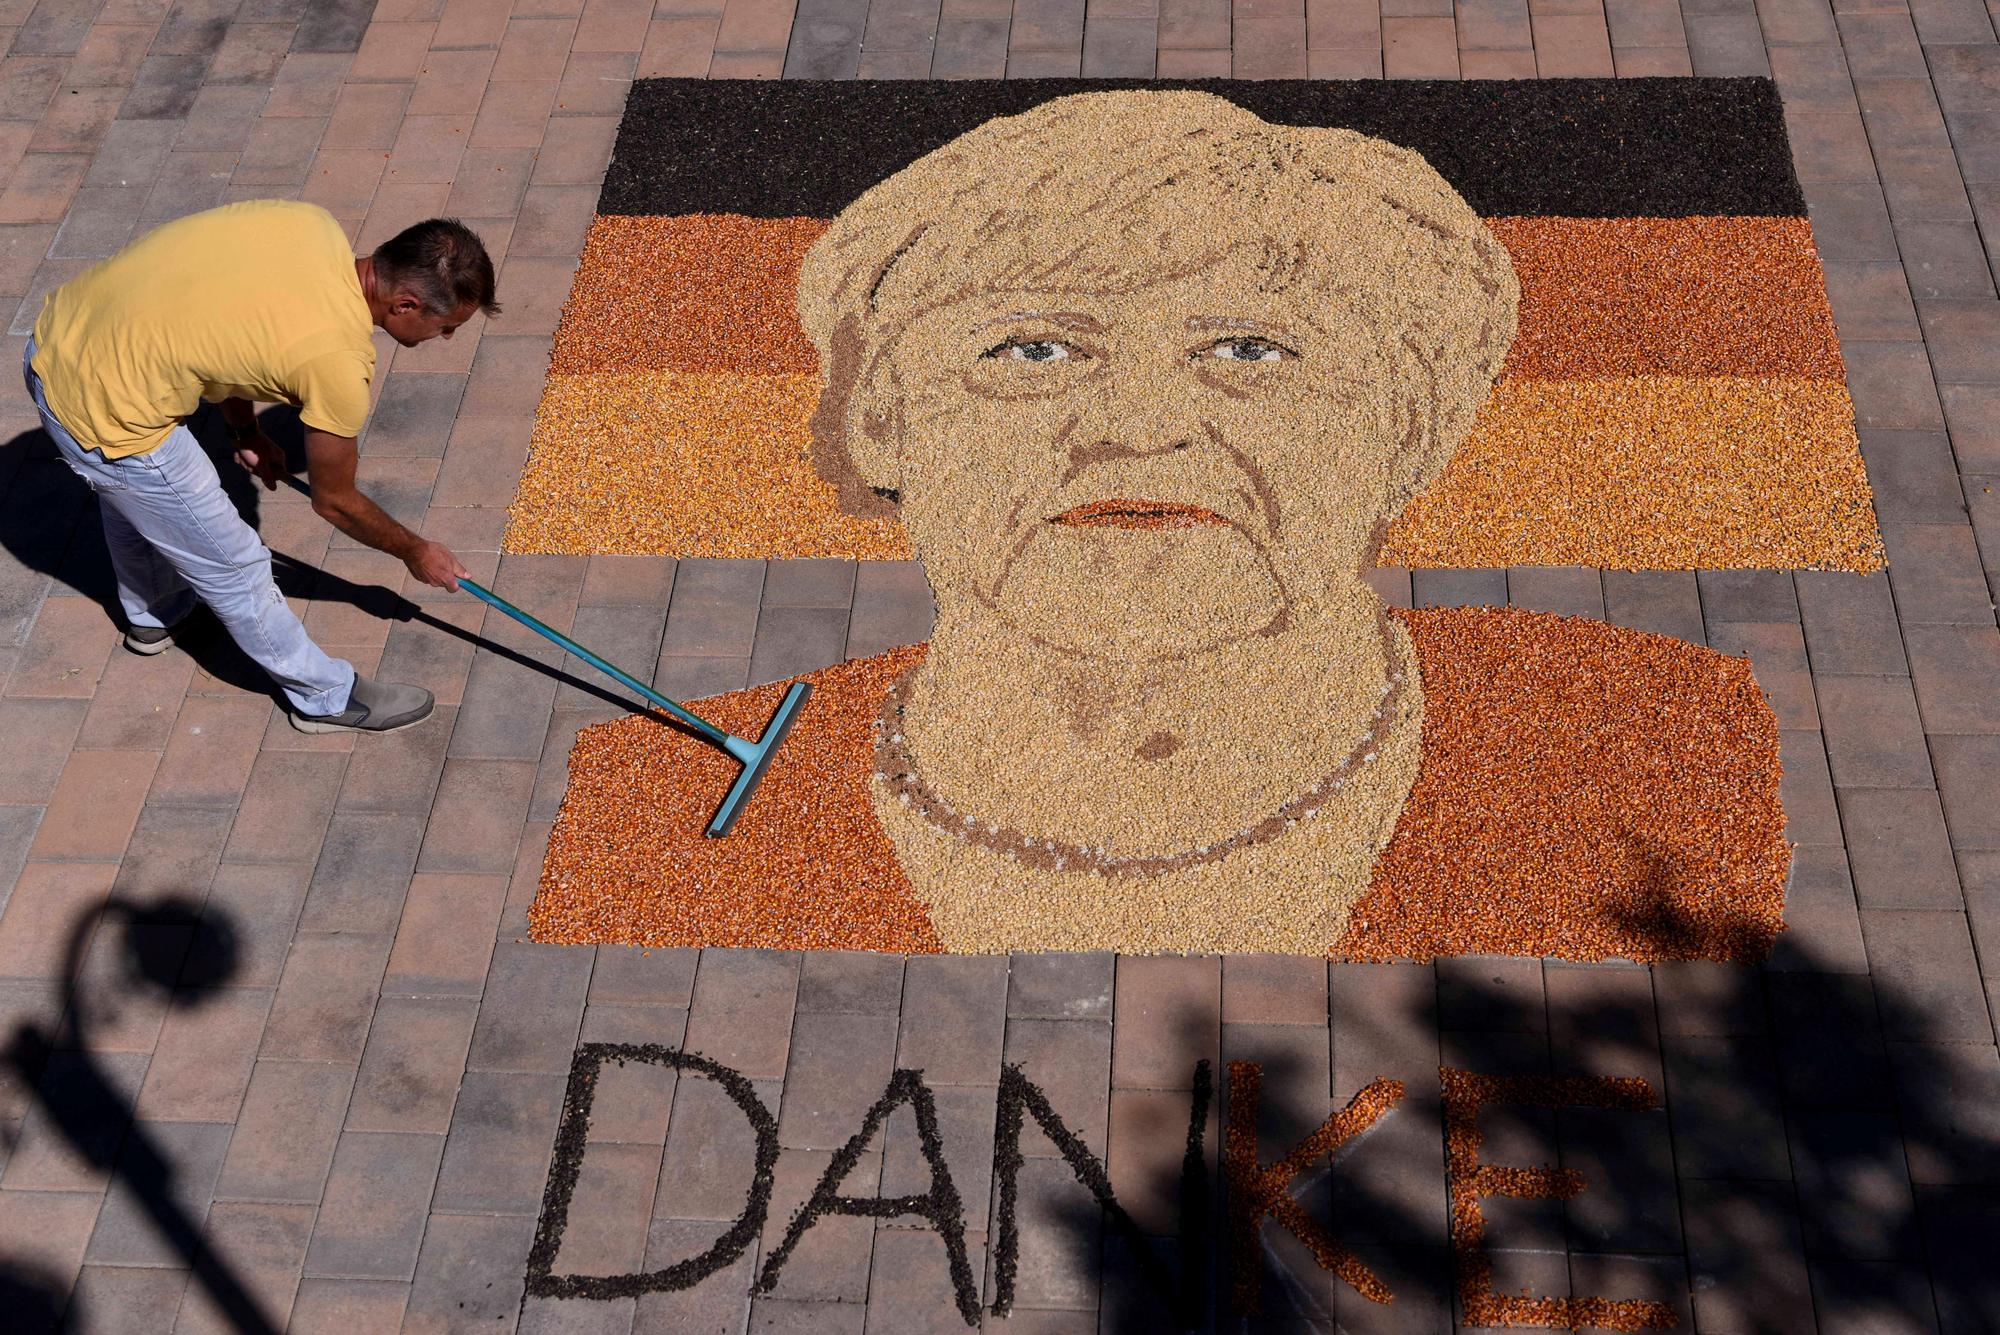 L'artiste kosovare Alkent Pozhegu finalise son portrait d'Angela Merkel en grains de maïs et graines, avec le mot "merci" (danke). [ASFP - ARMEND NIMANI]